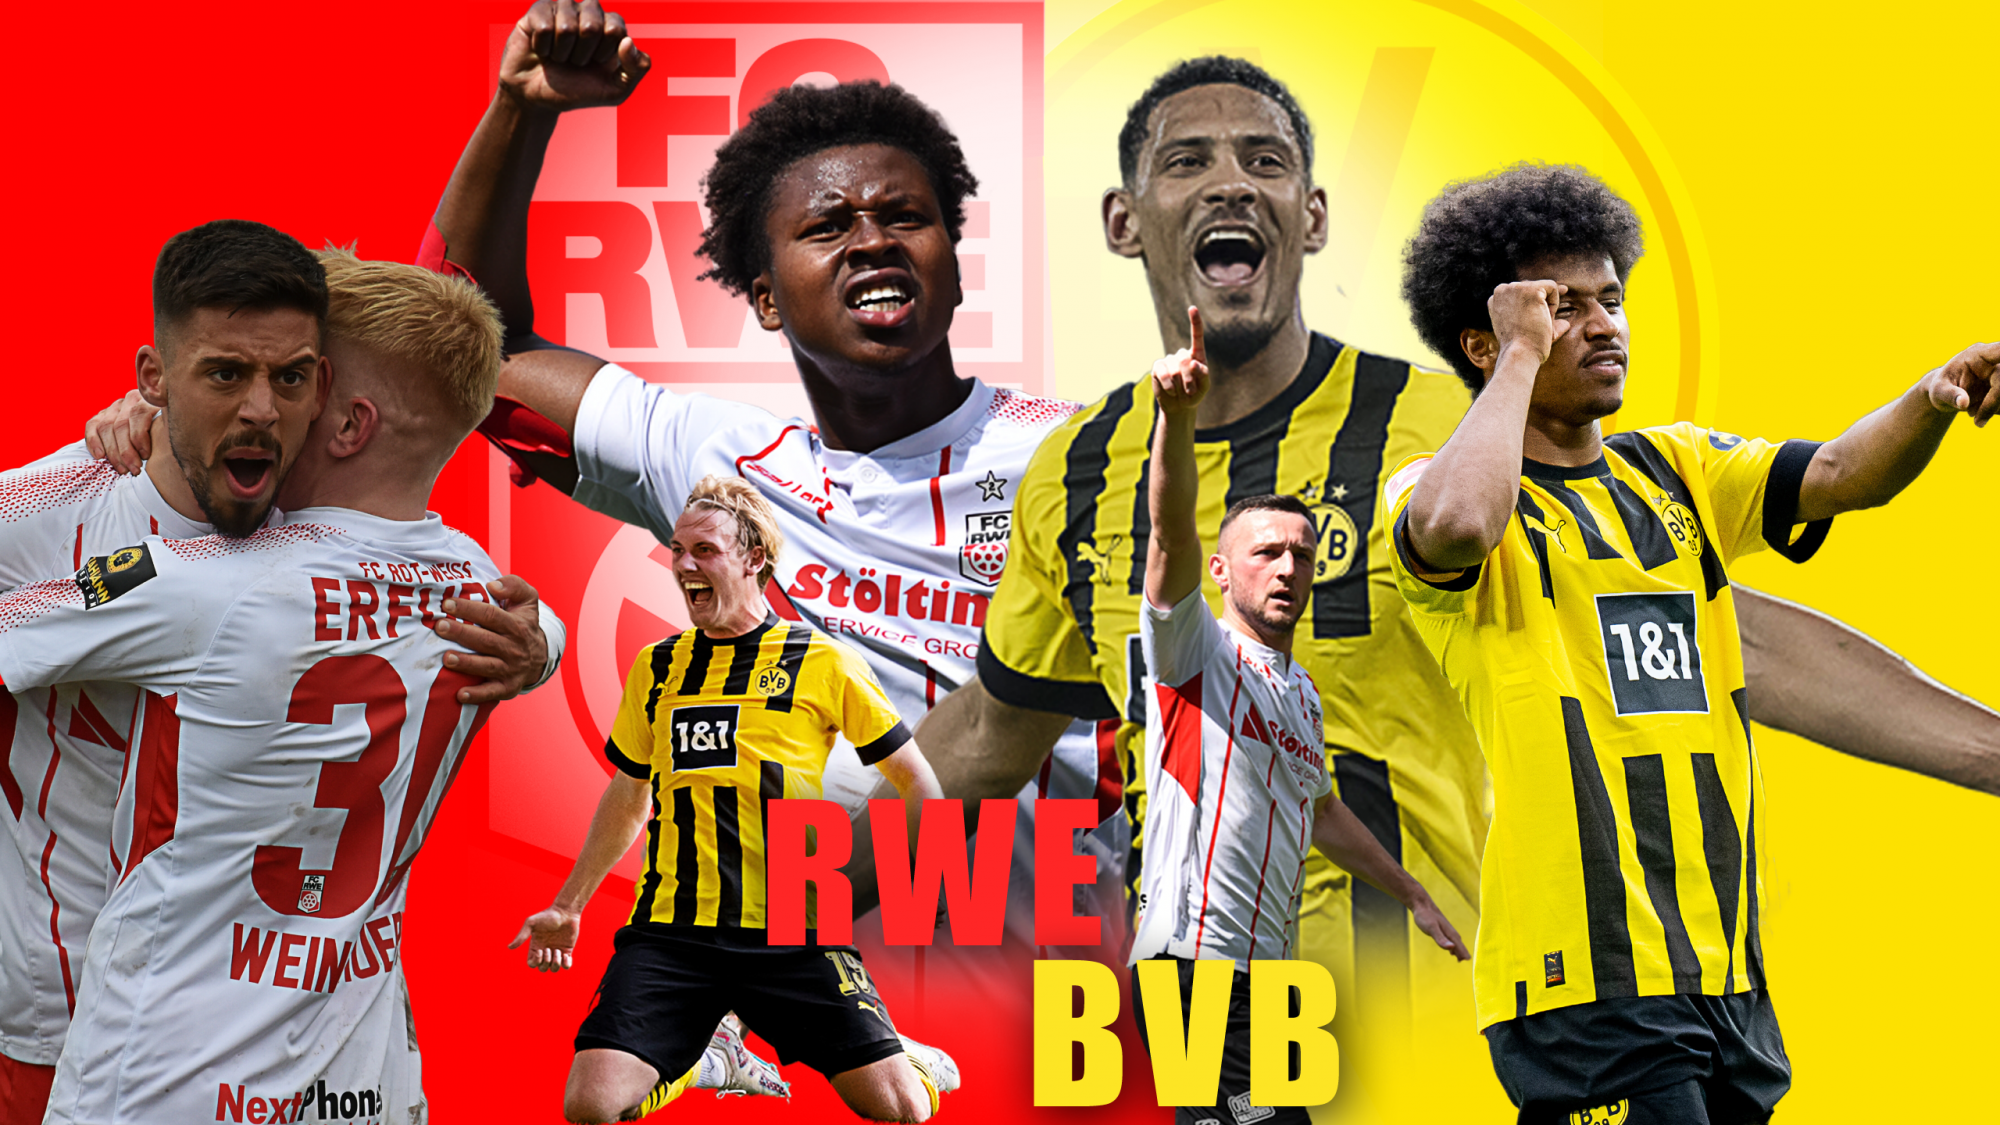 Spieltagsinfos zum BVB-Spiel!Aktuelle News